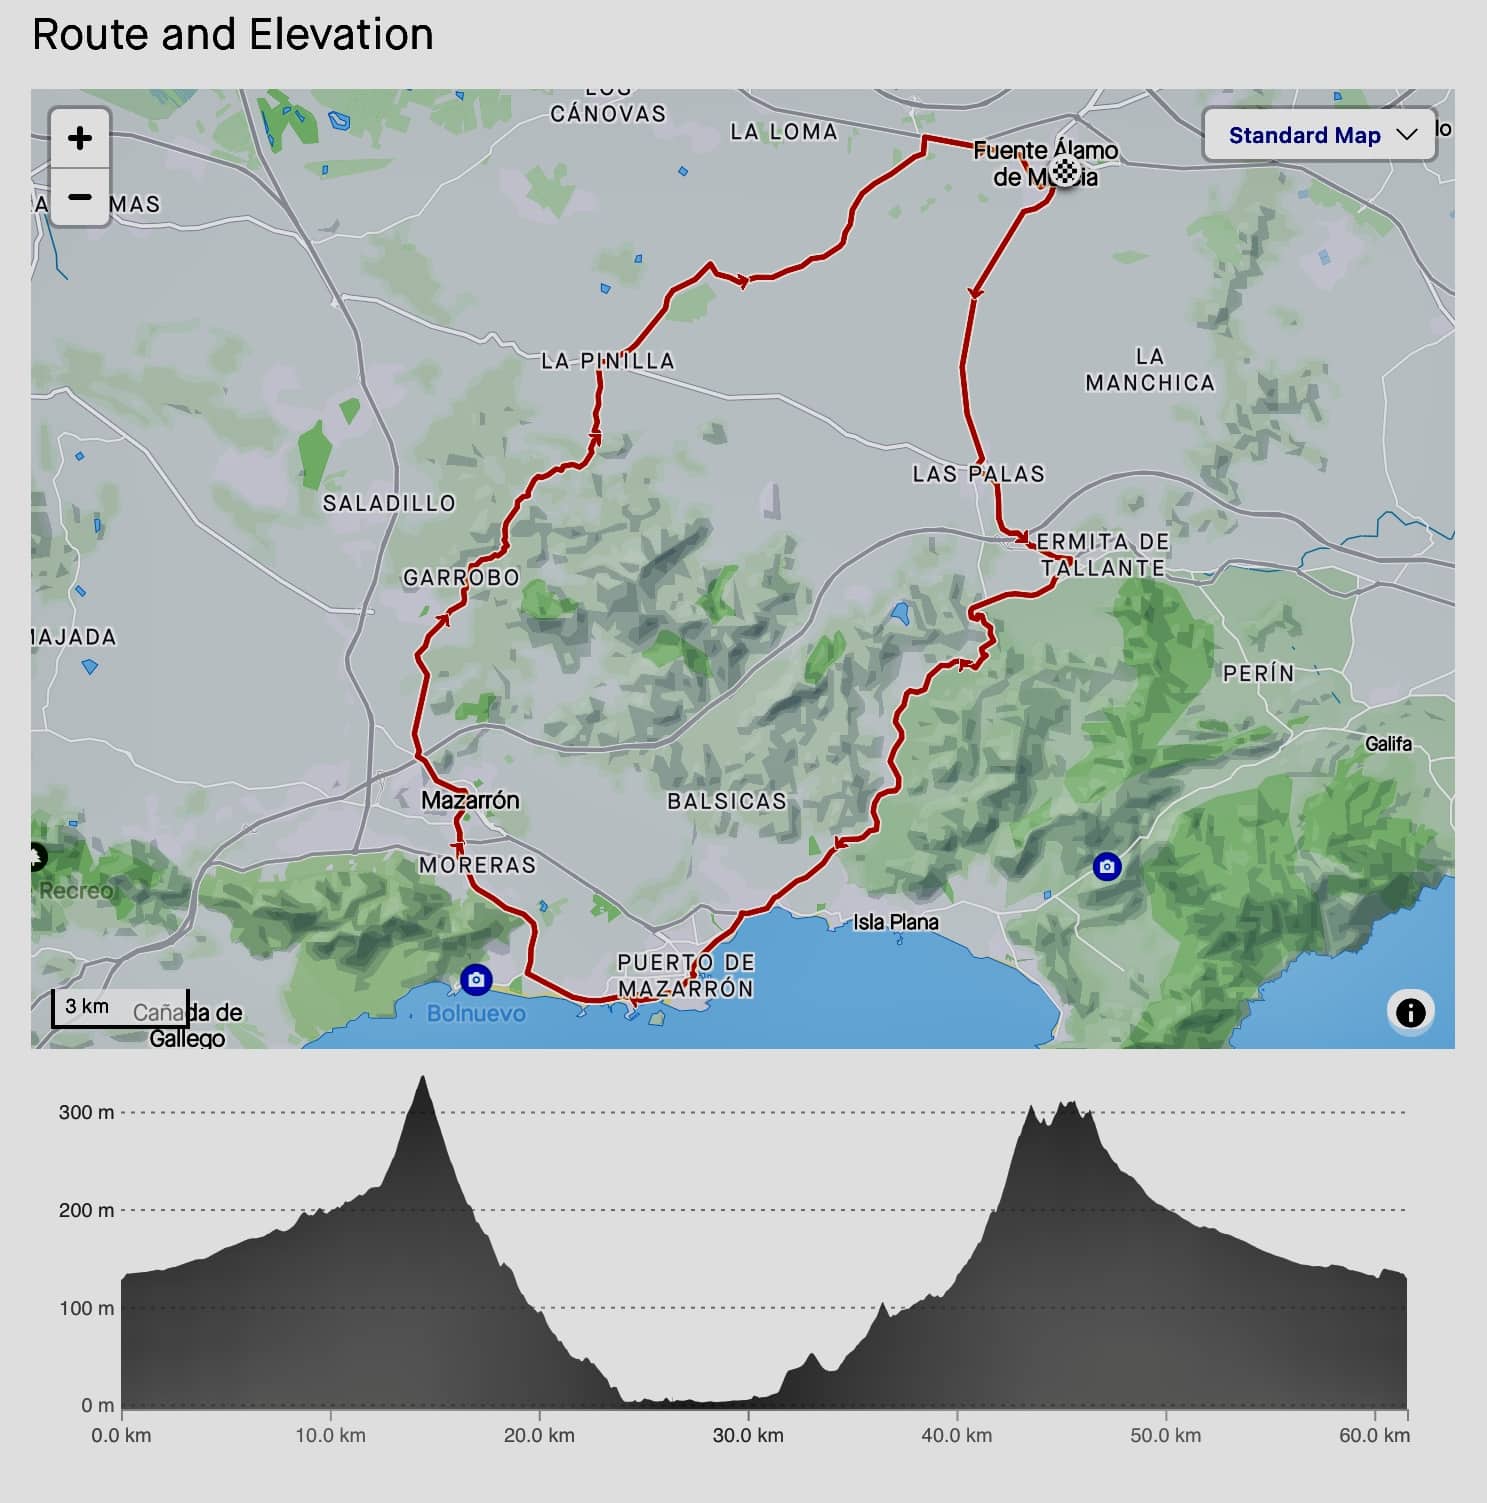 Mazarron - GPX Route 3 - Murcia Bike Hire - GPX Route Download